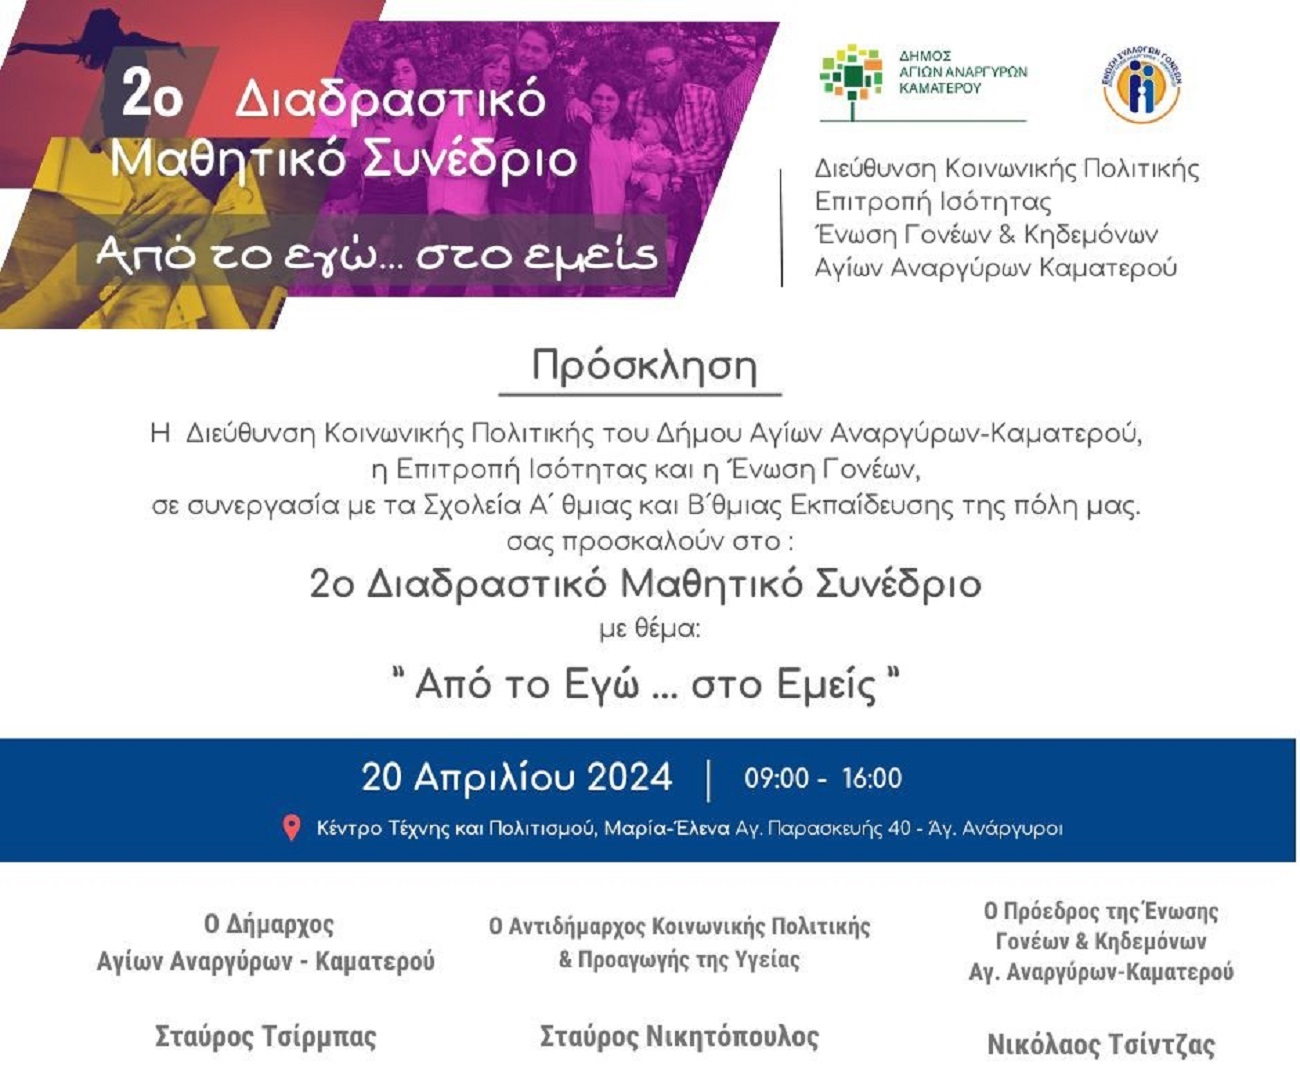 Δήμος Αγίων Αναργύρων-Καματερού: Διοργανώνει το 2ο Διαδραστικό μαθητικό συνέδριο το Σάββατο 20 Απριλίου